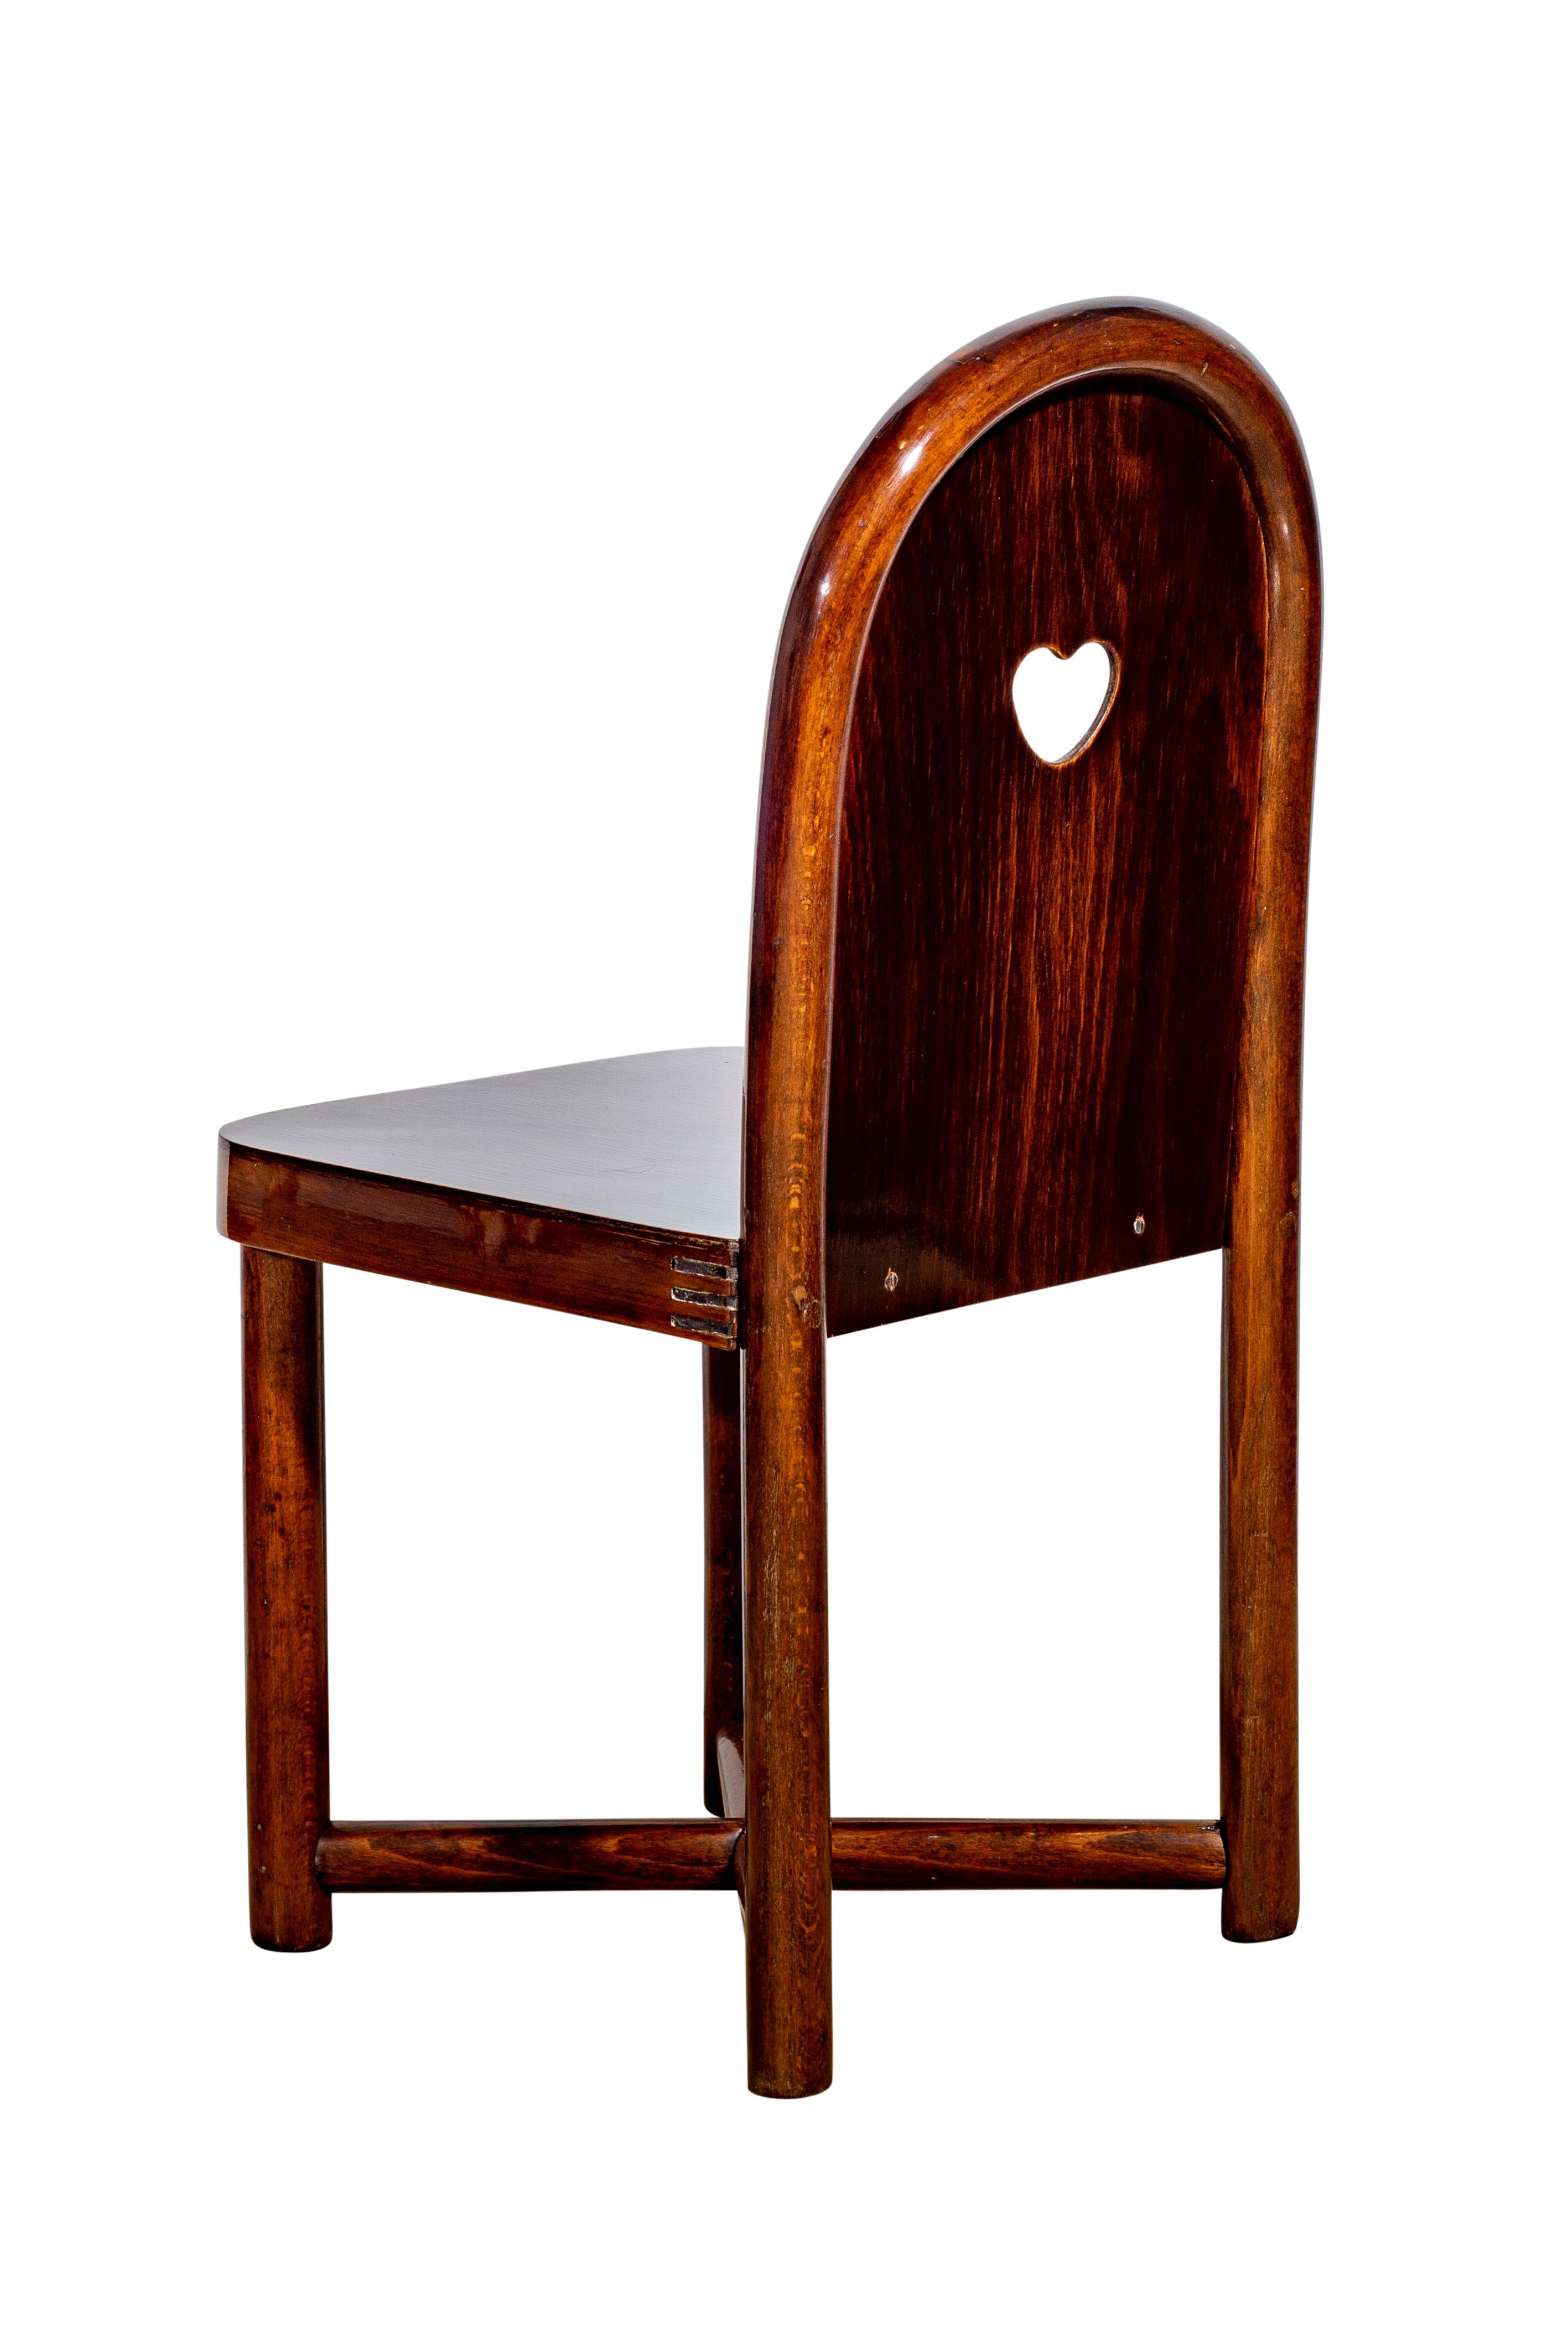 bent beechwood chair